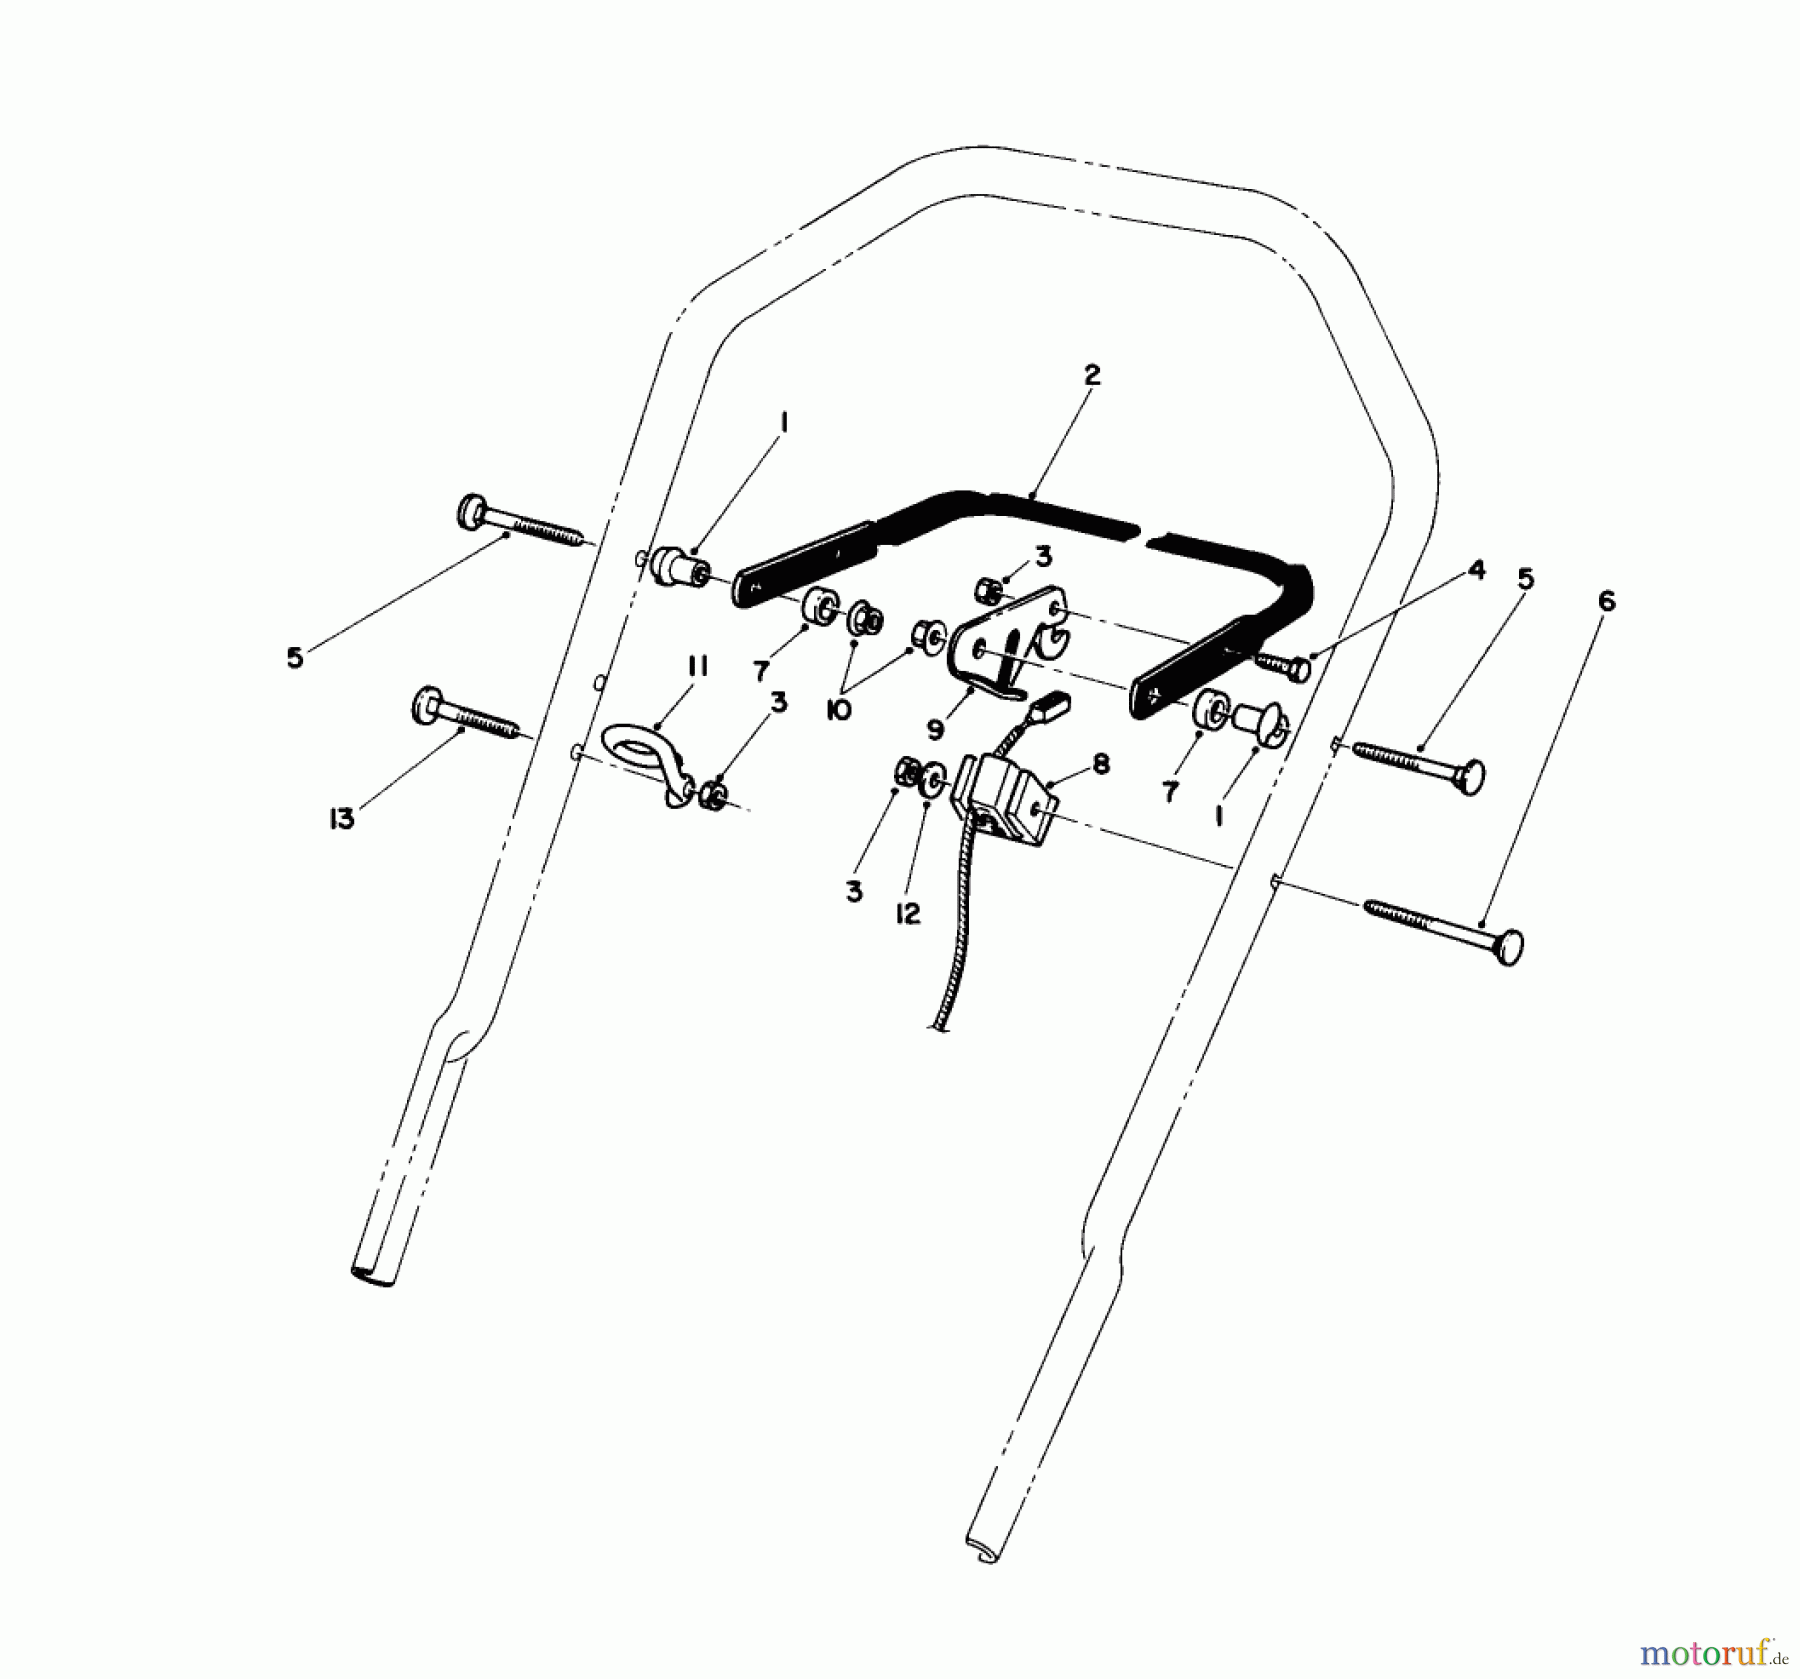  Toro Neu Mowers, Walk-Behind Seite 1 16585C - Toro Lawnmower, 1989 (9000001-9999999) CONTROL ASSEMBLY